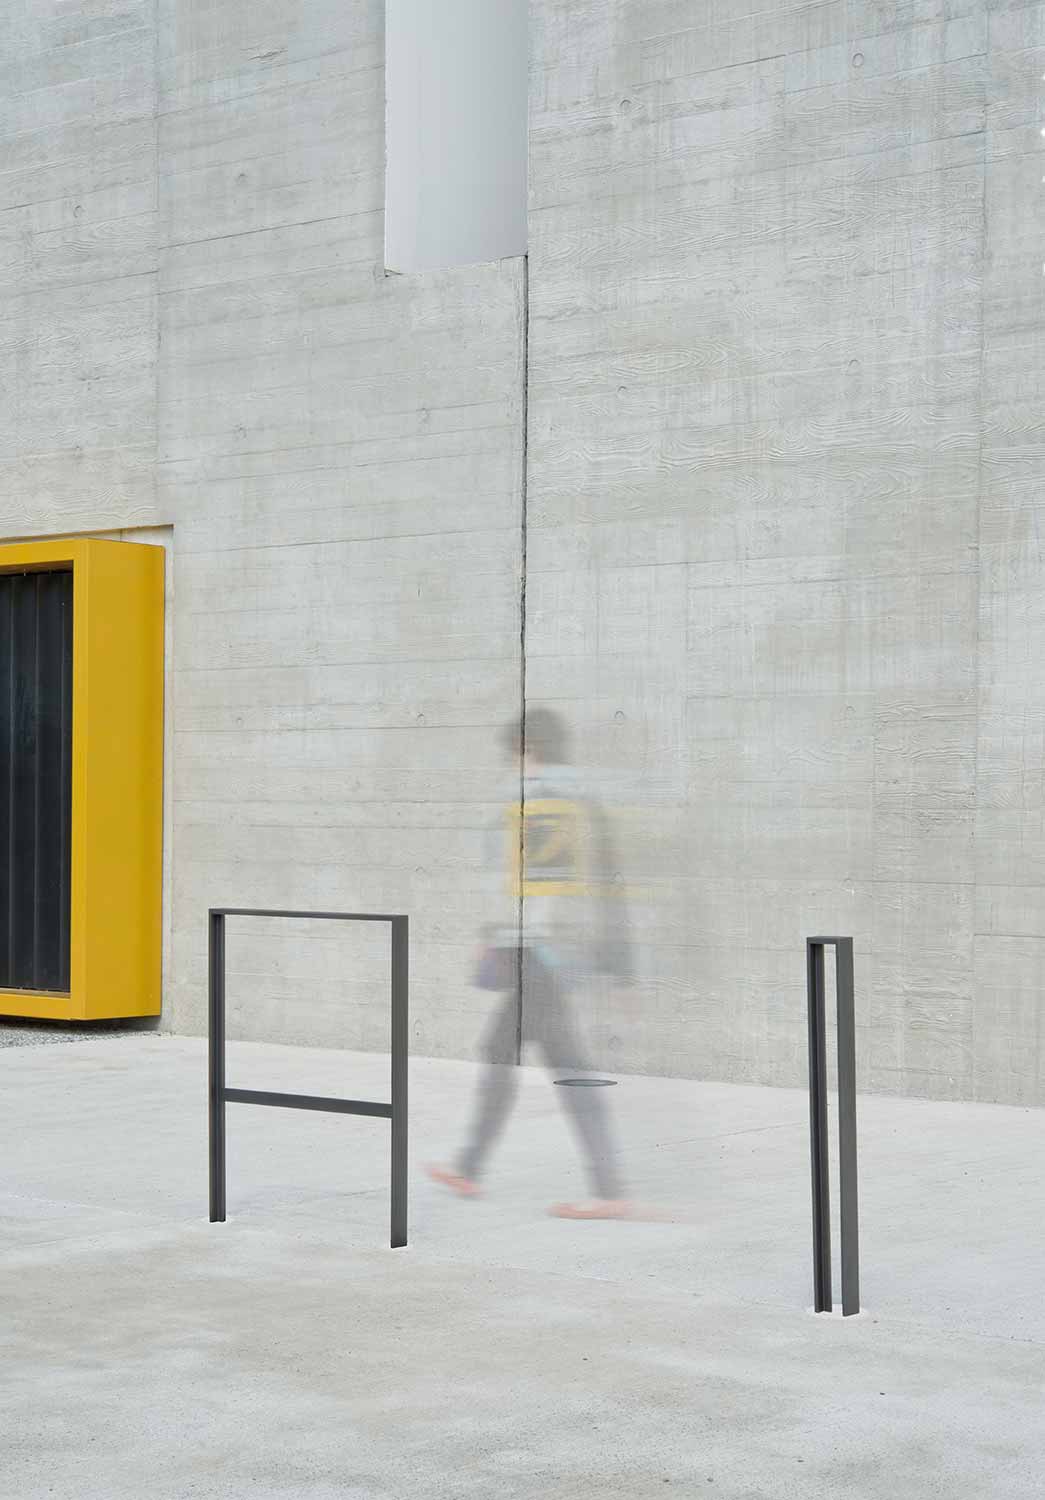 Barrière ANTARES conçu et fabriqué par Aréa mobilier urbain